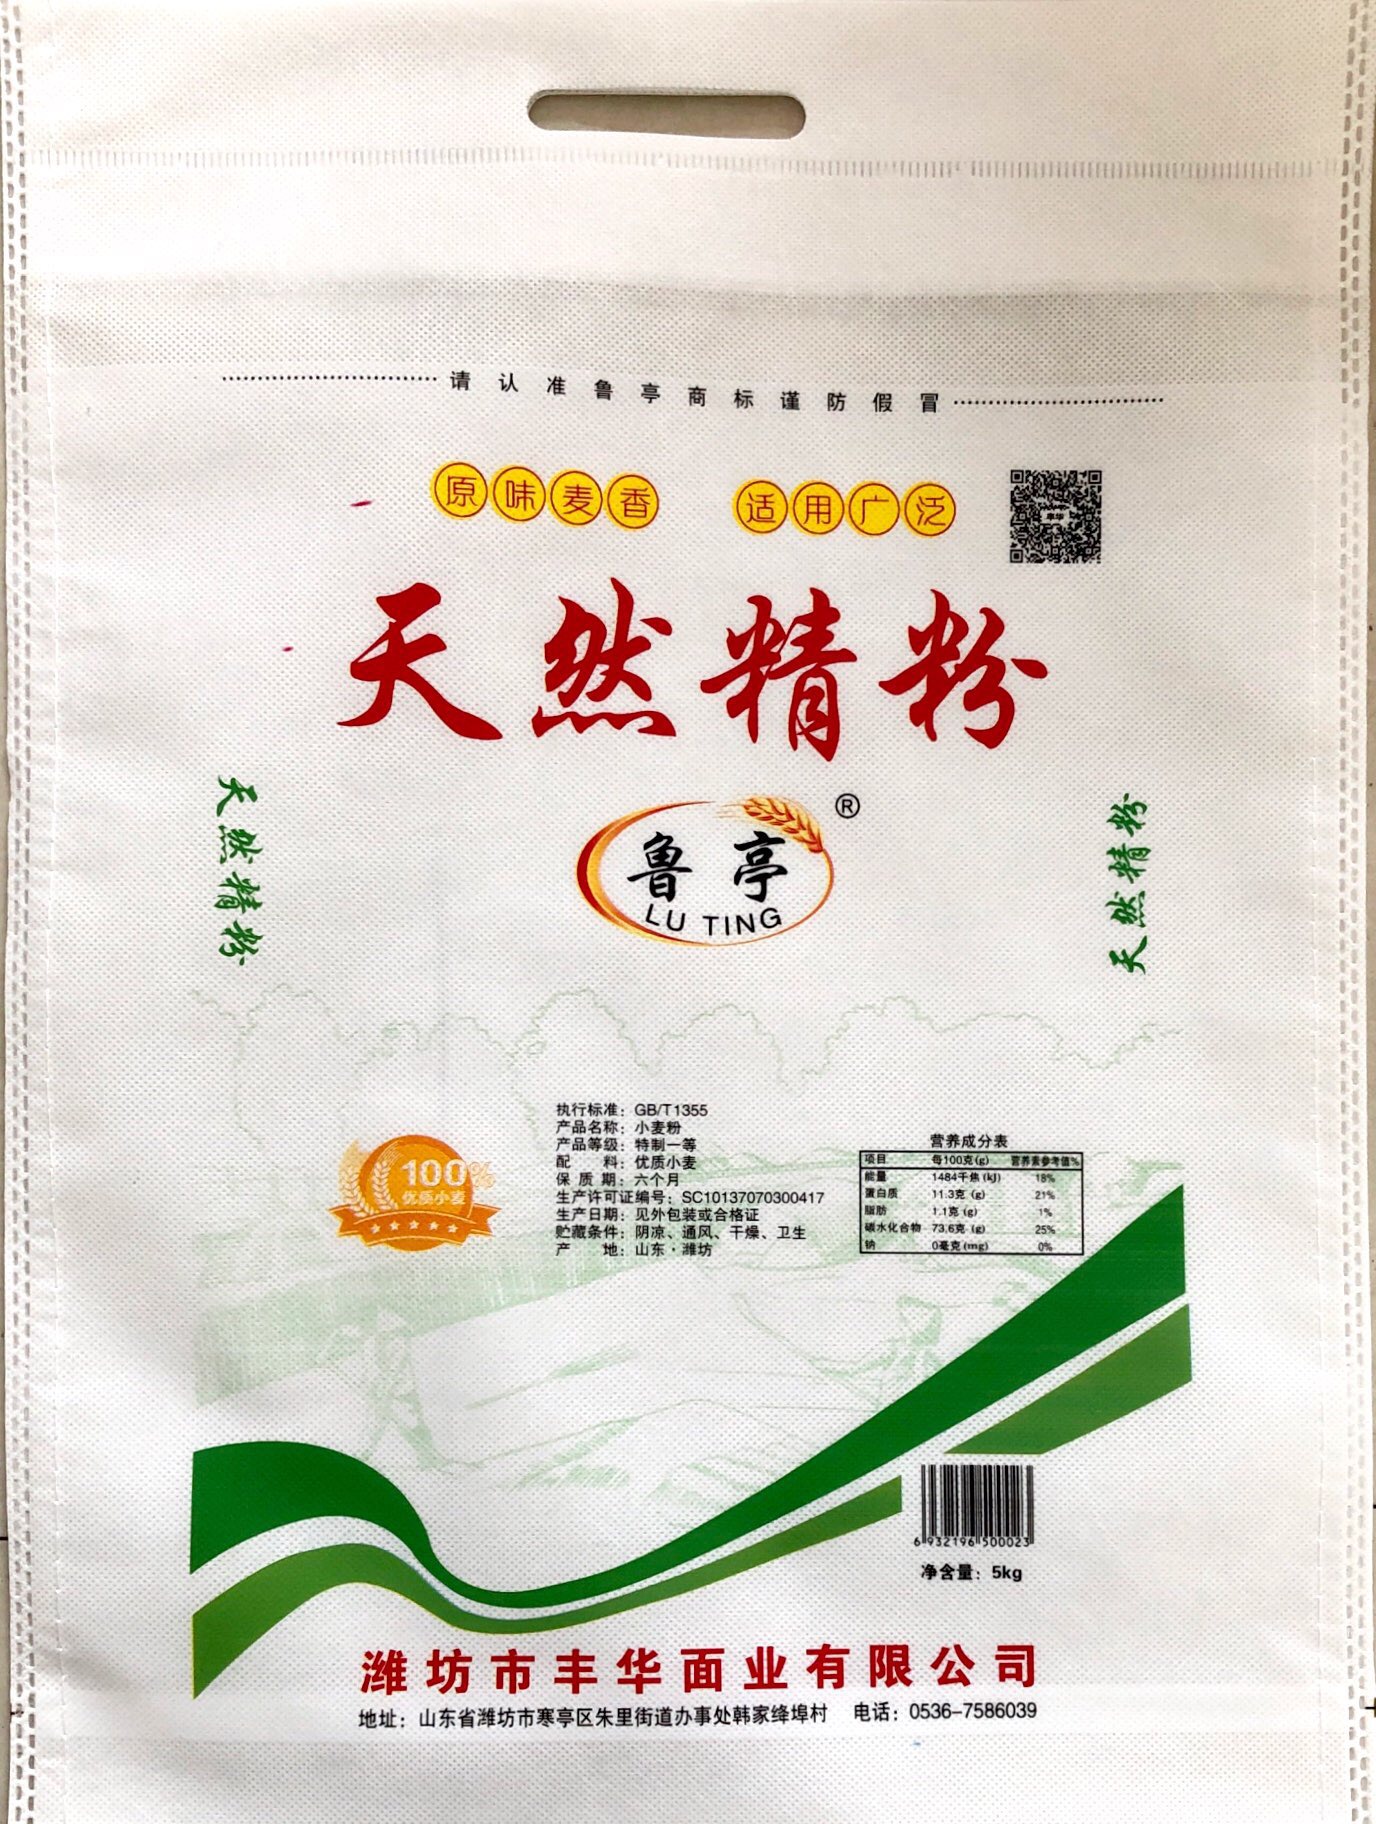 公司推荐产品 - 潍坊市香野面粉有限公司